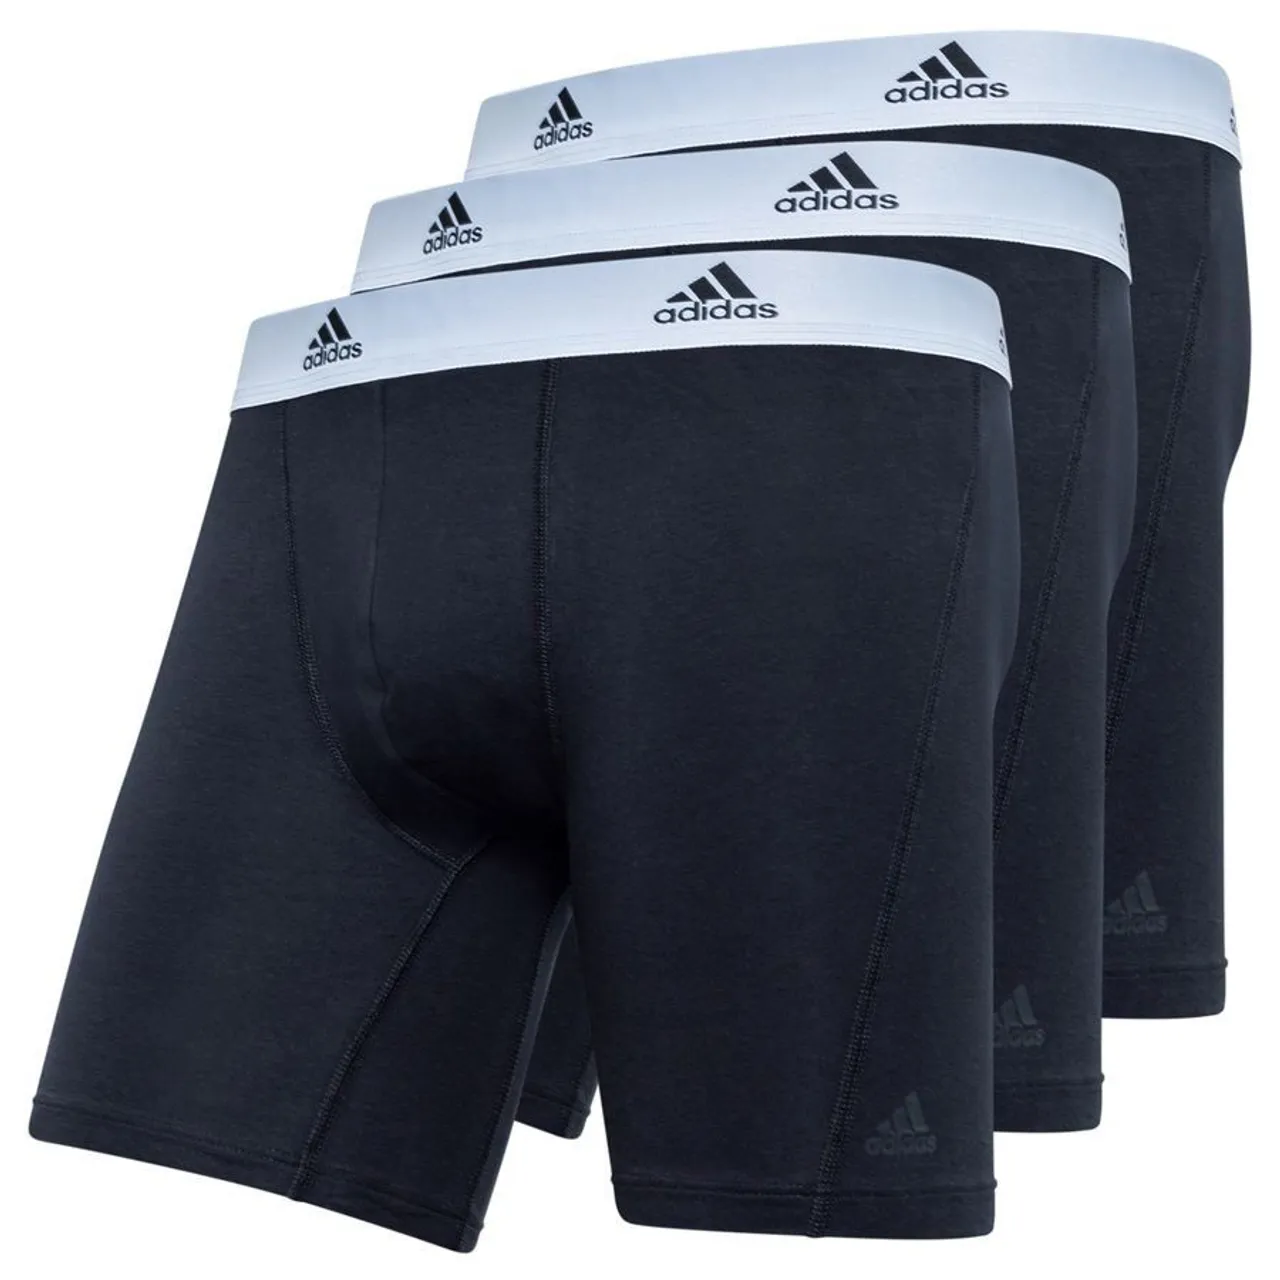 adidas Boxer Shorts Brief 3er-Pack - Schwarz/Weiß